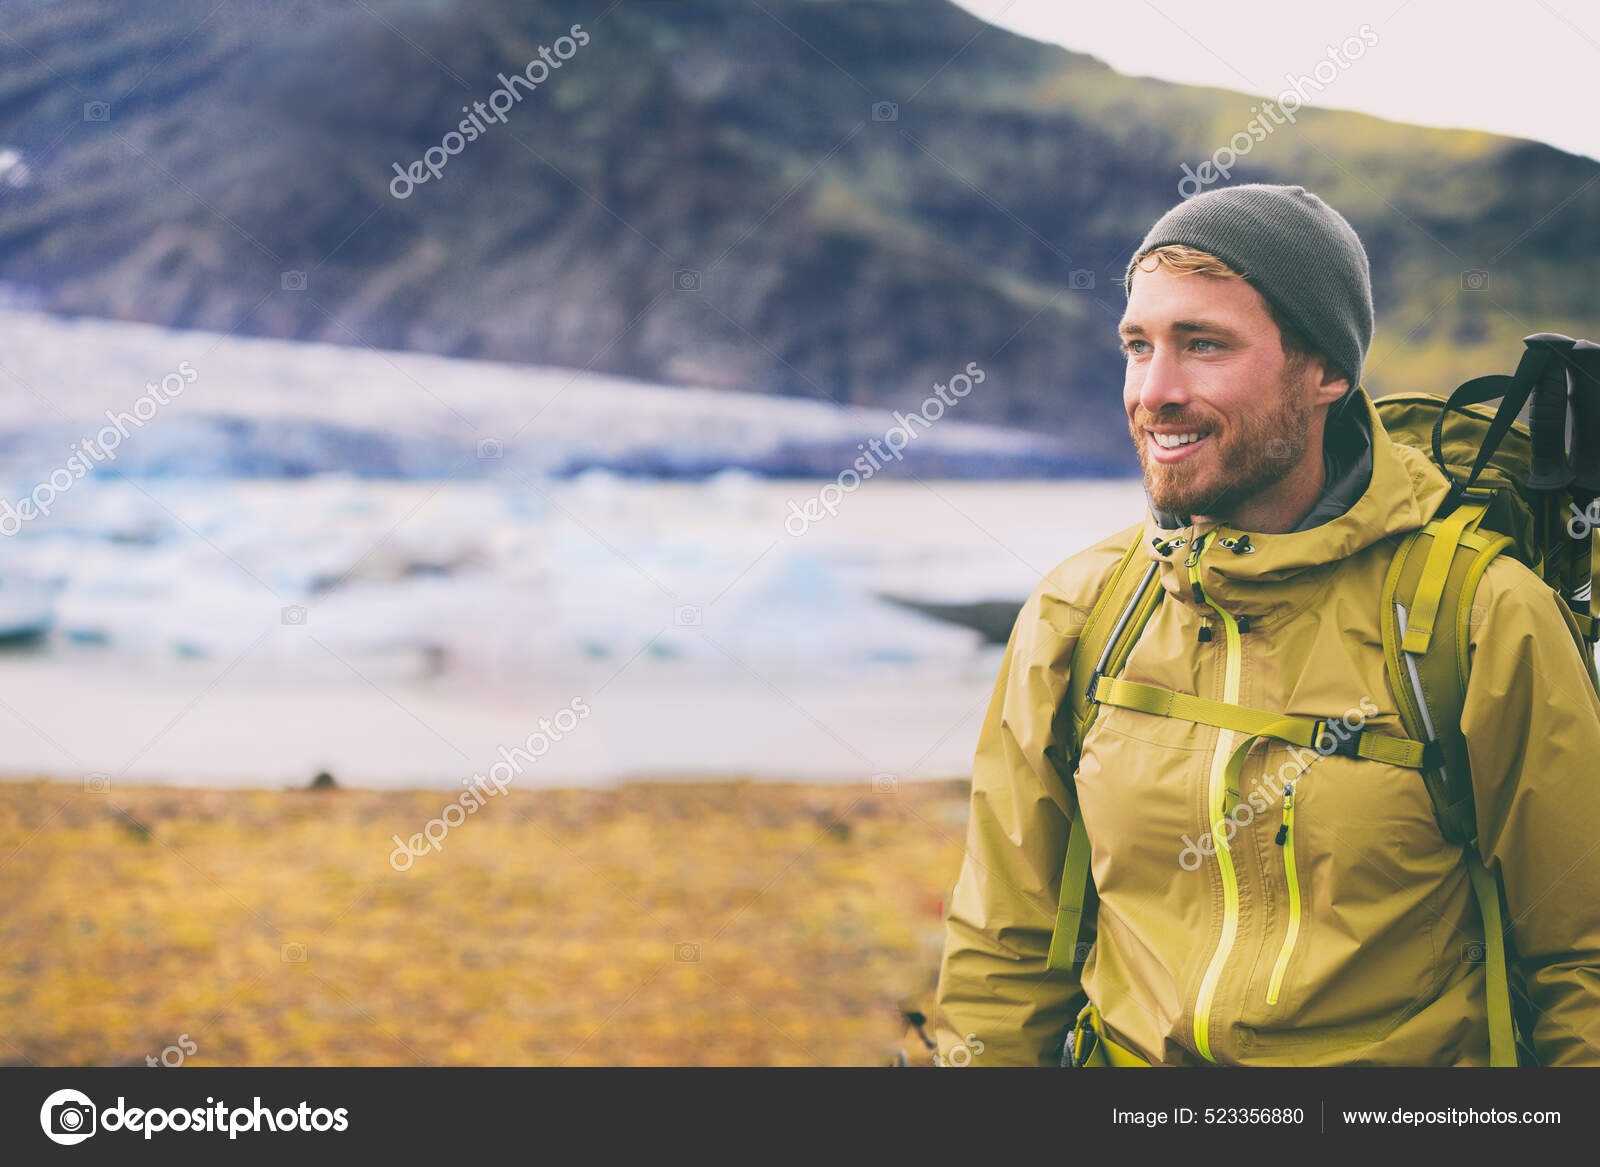 Vinter vandretur på sne bjerg glad vandrer mand gå i is vildmark i Island. rejser eventyr i naturen landskab. Person iført hat og jakke til koldt vejr, vandrestifter. —